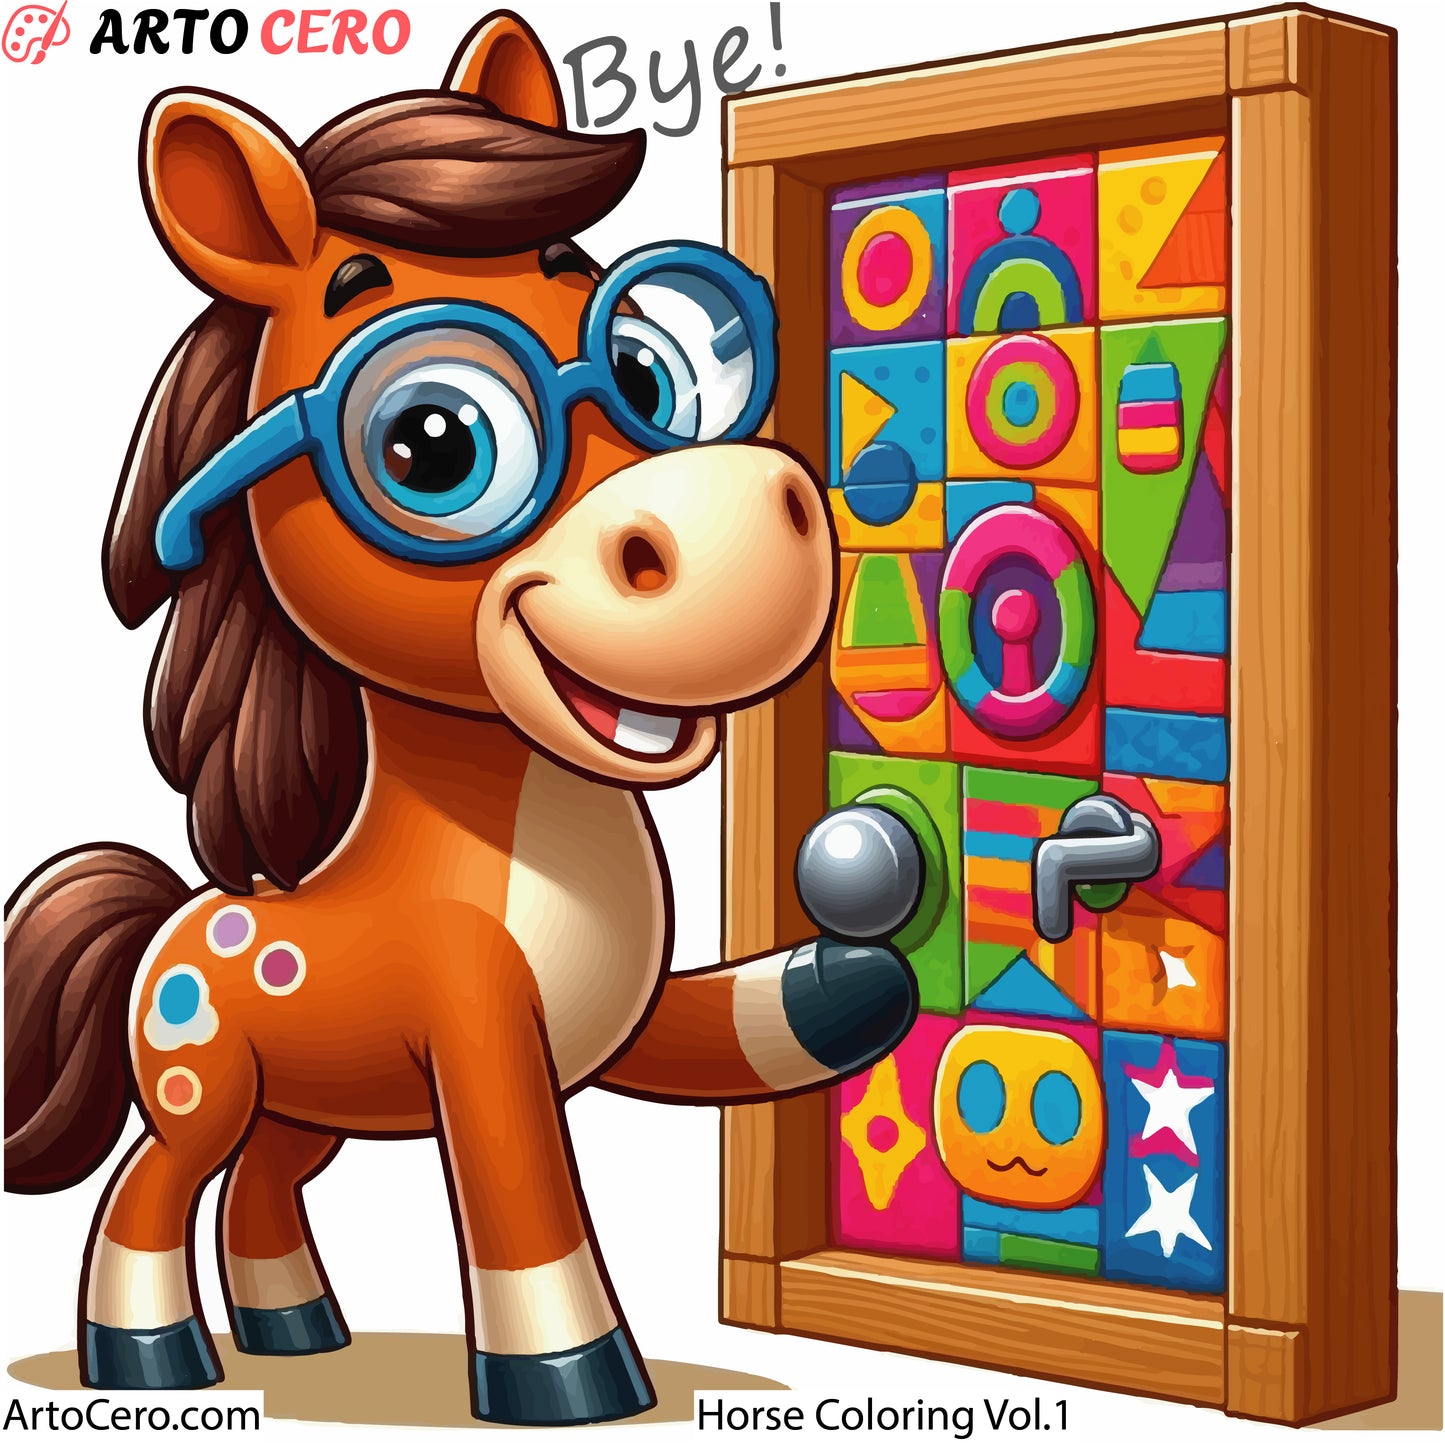 Horse Coloring Digital Book Vol.1 - ArtoCero.com